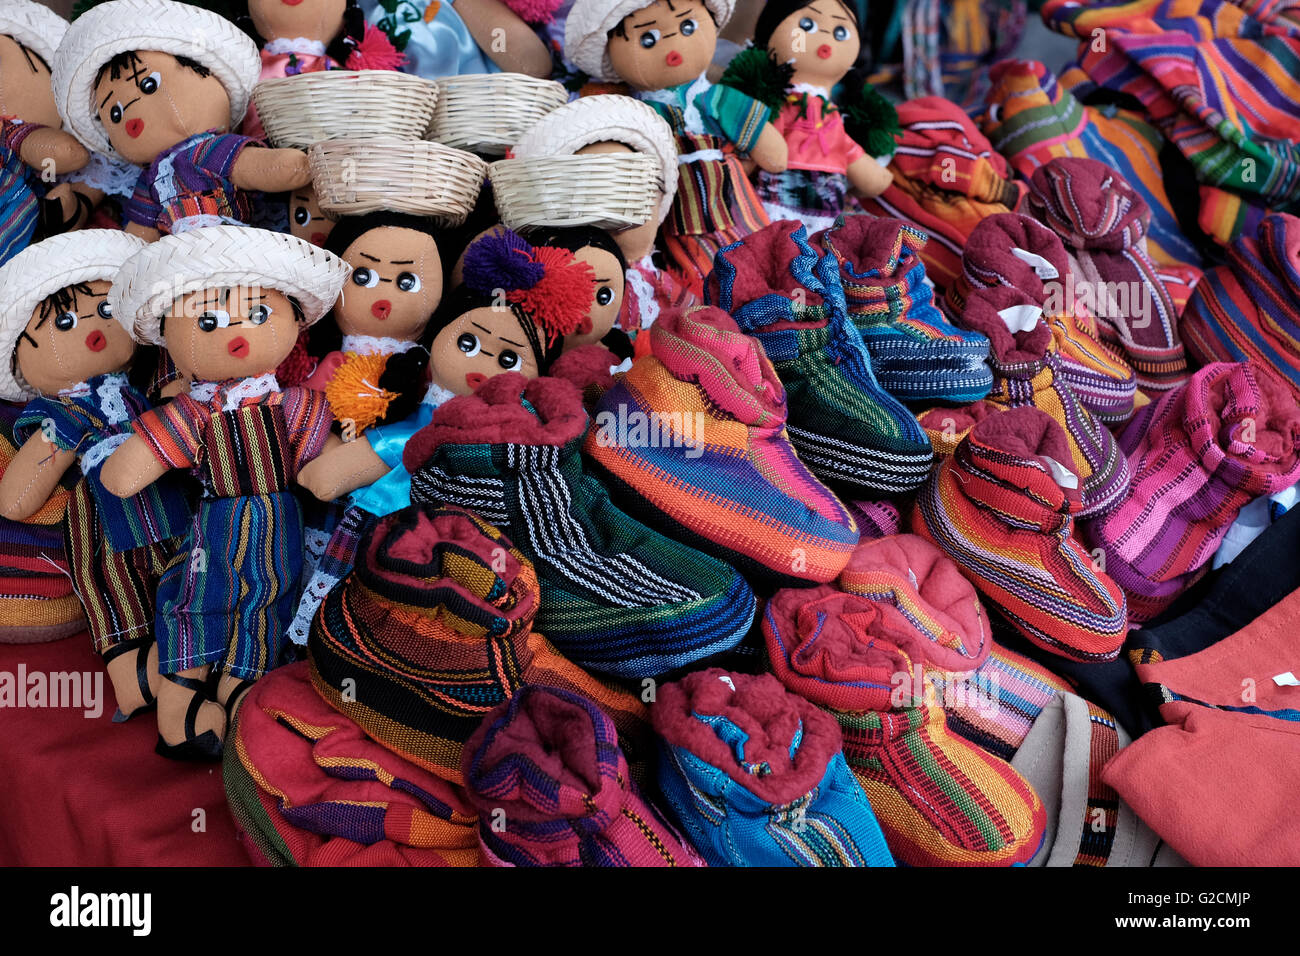 Souvenirs à vendre au marché de Chichicastenango également connu sous le nom de Santo Tomás Chichicastenango une ville dans le département de Guatemala El Quiché, connu pour sa culture Maya Kiche traditionnels. Banque D'Images